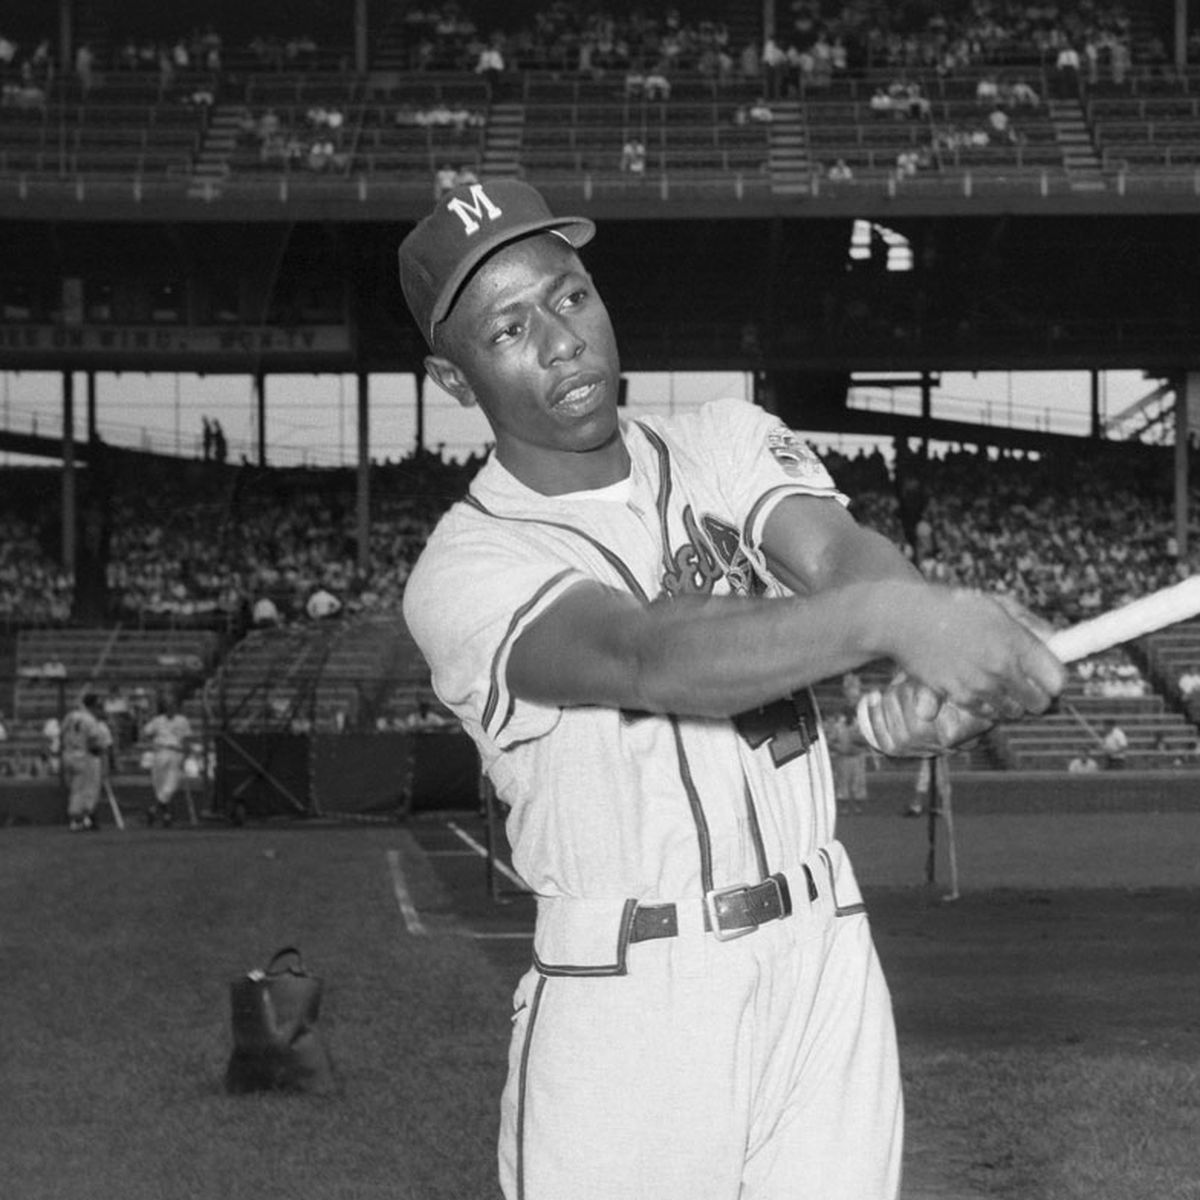 Braves, Brewers legend Hank Aaron dies at 86